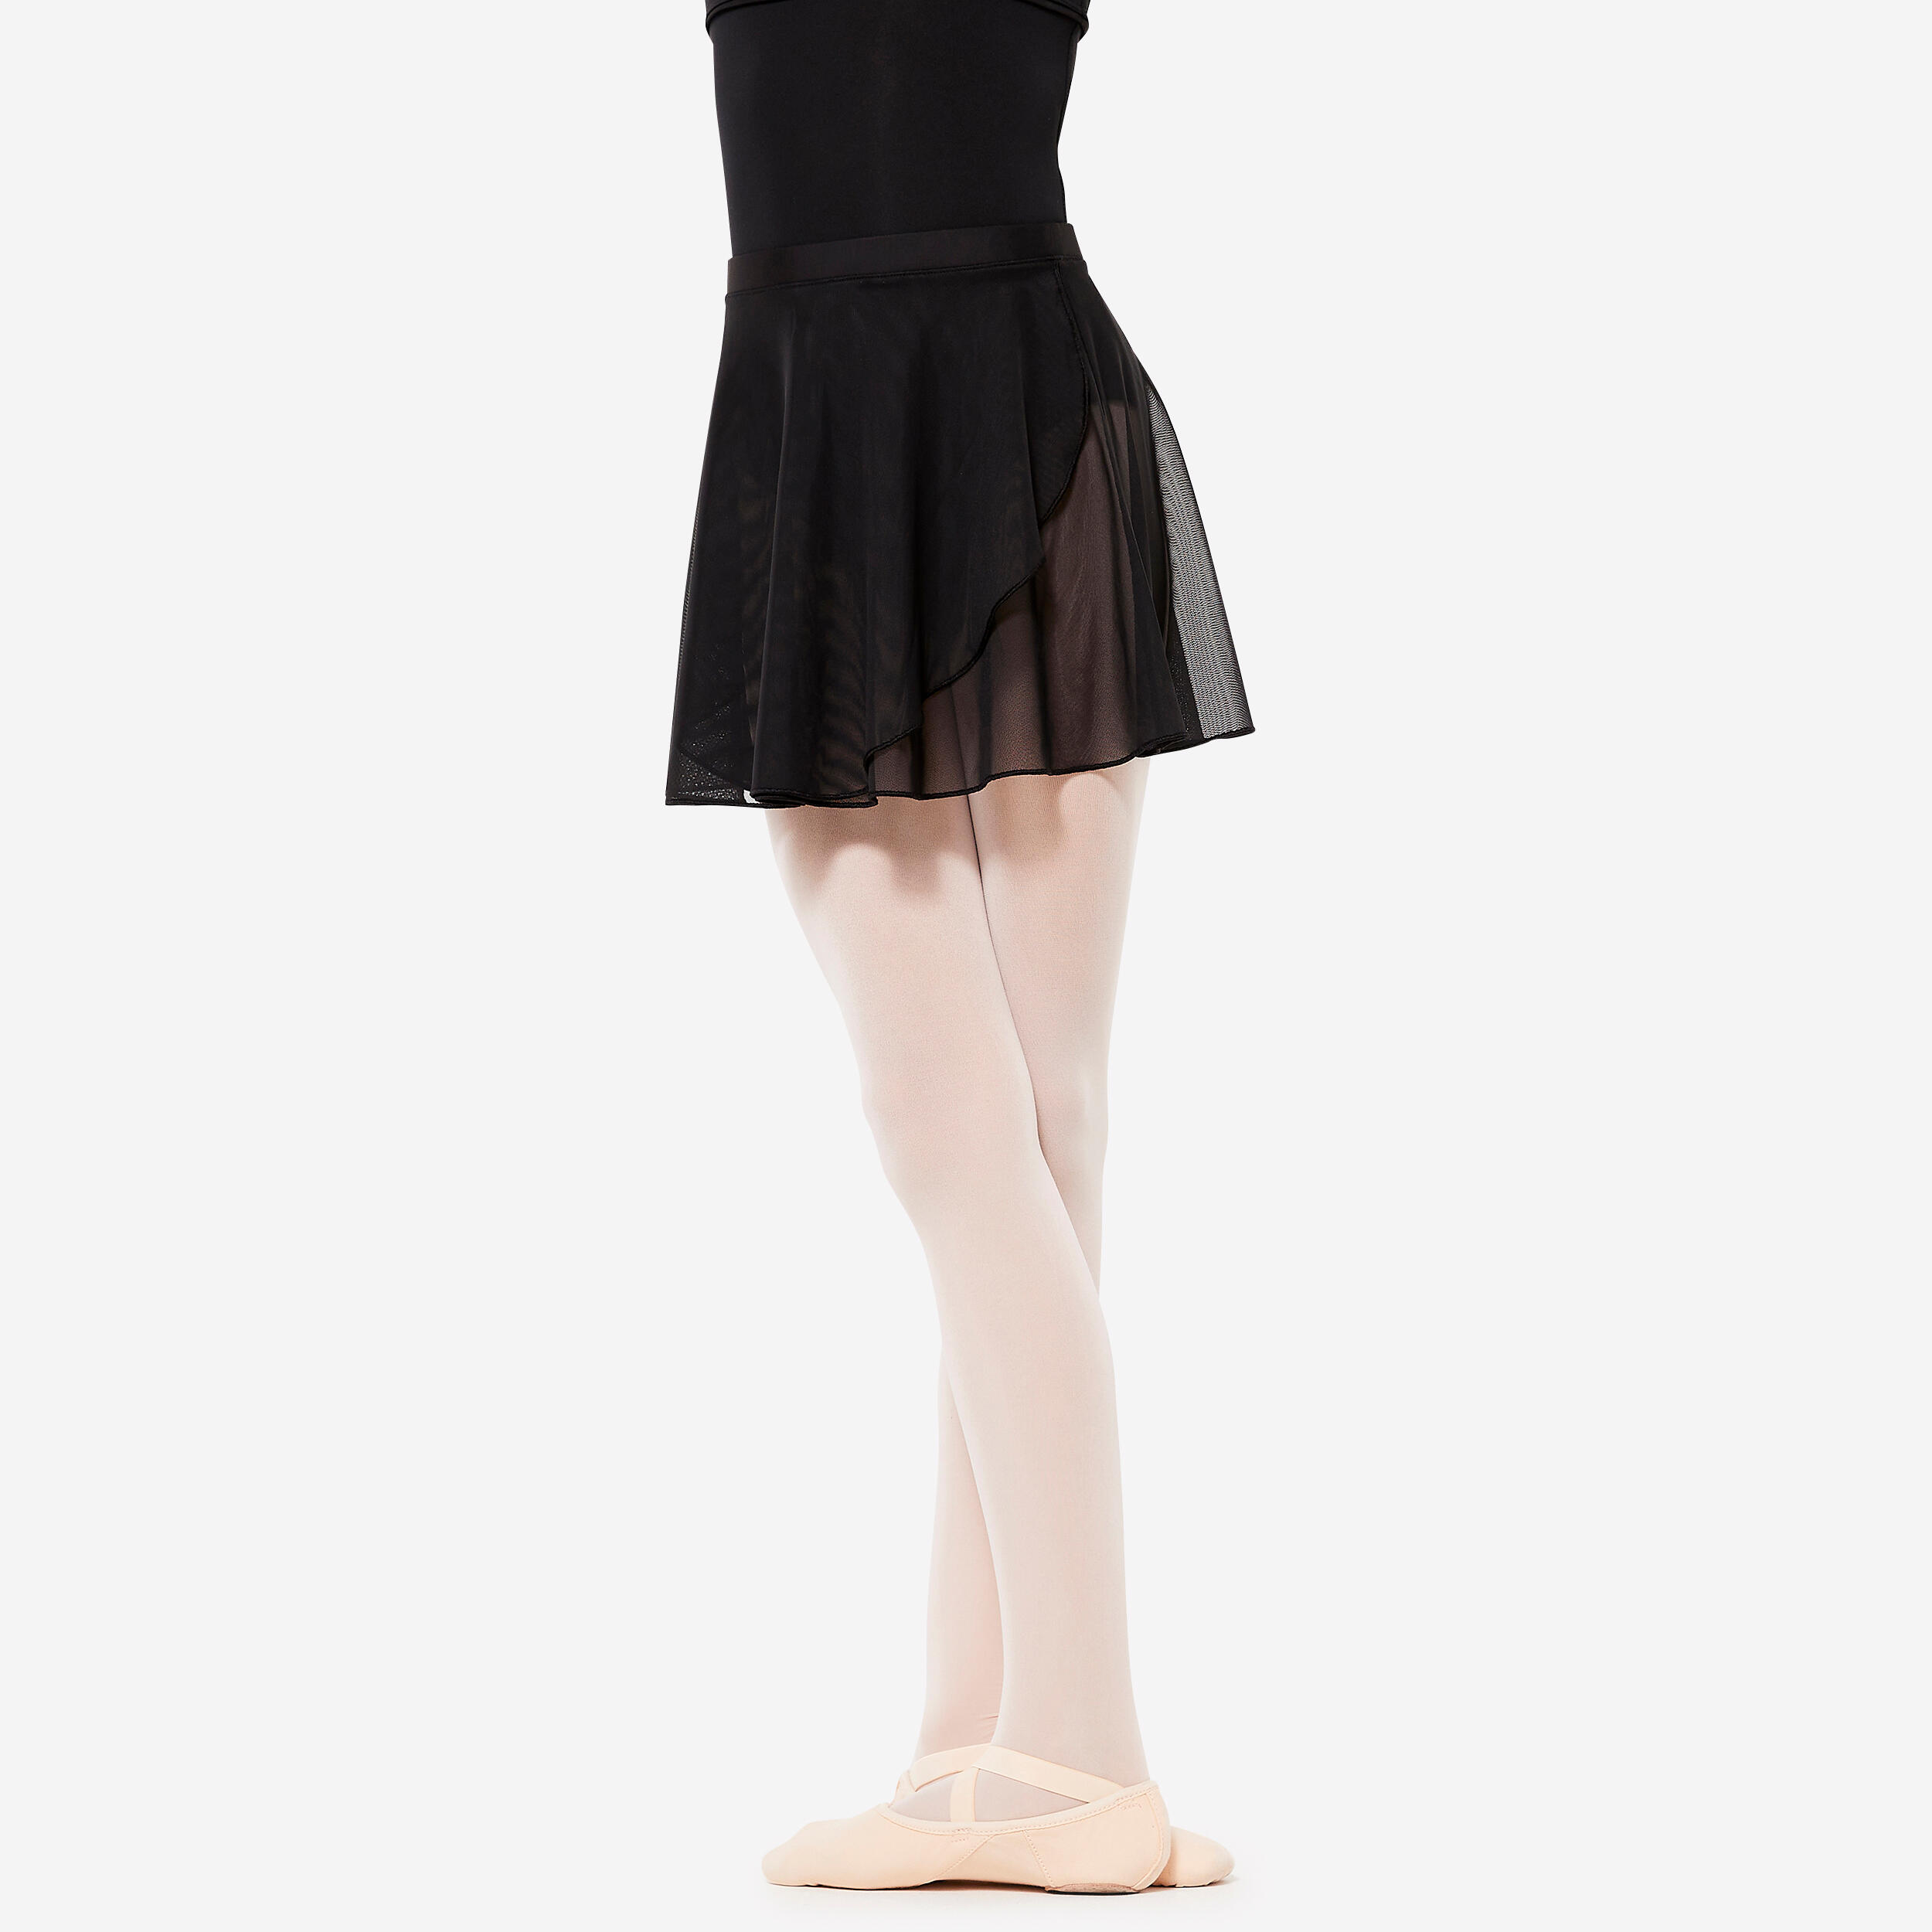 Women’s Ballet Skirt